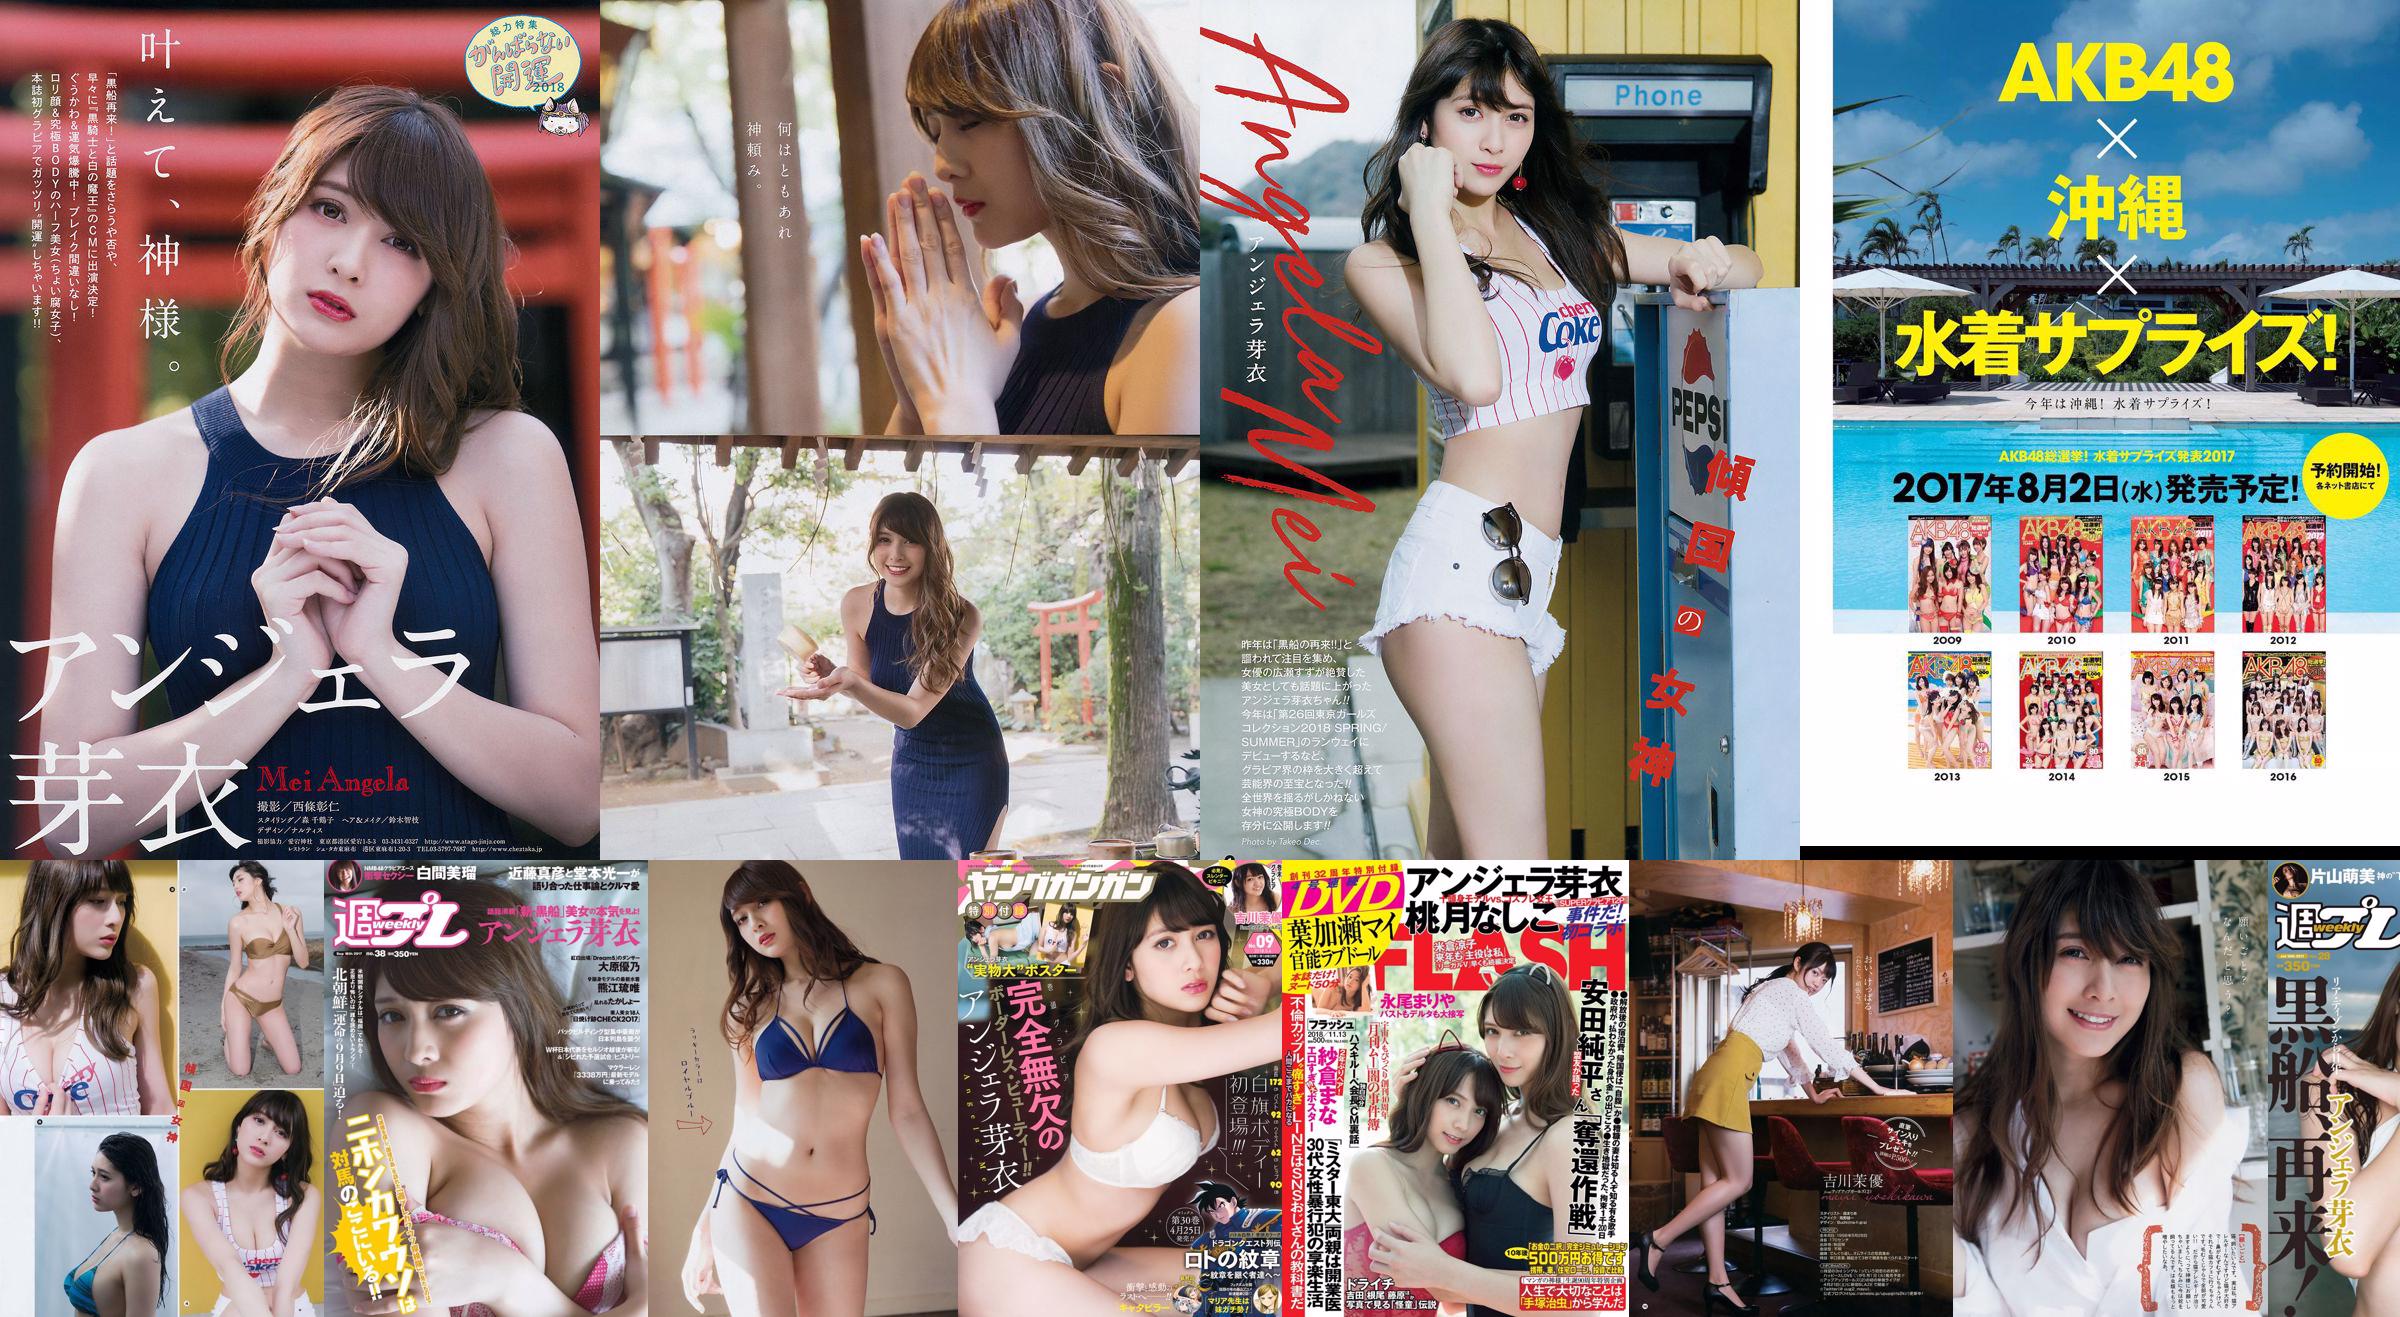 Angela Mei Riho Abiru Yuuna Suzuki Yuno Ohara Moemi Katayama Ito Ohno [Wekelijkse Playboy] 2017 No.28 Foto No.22fb43 Pagina 1